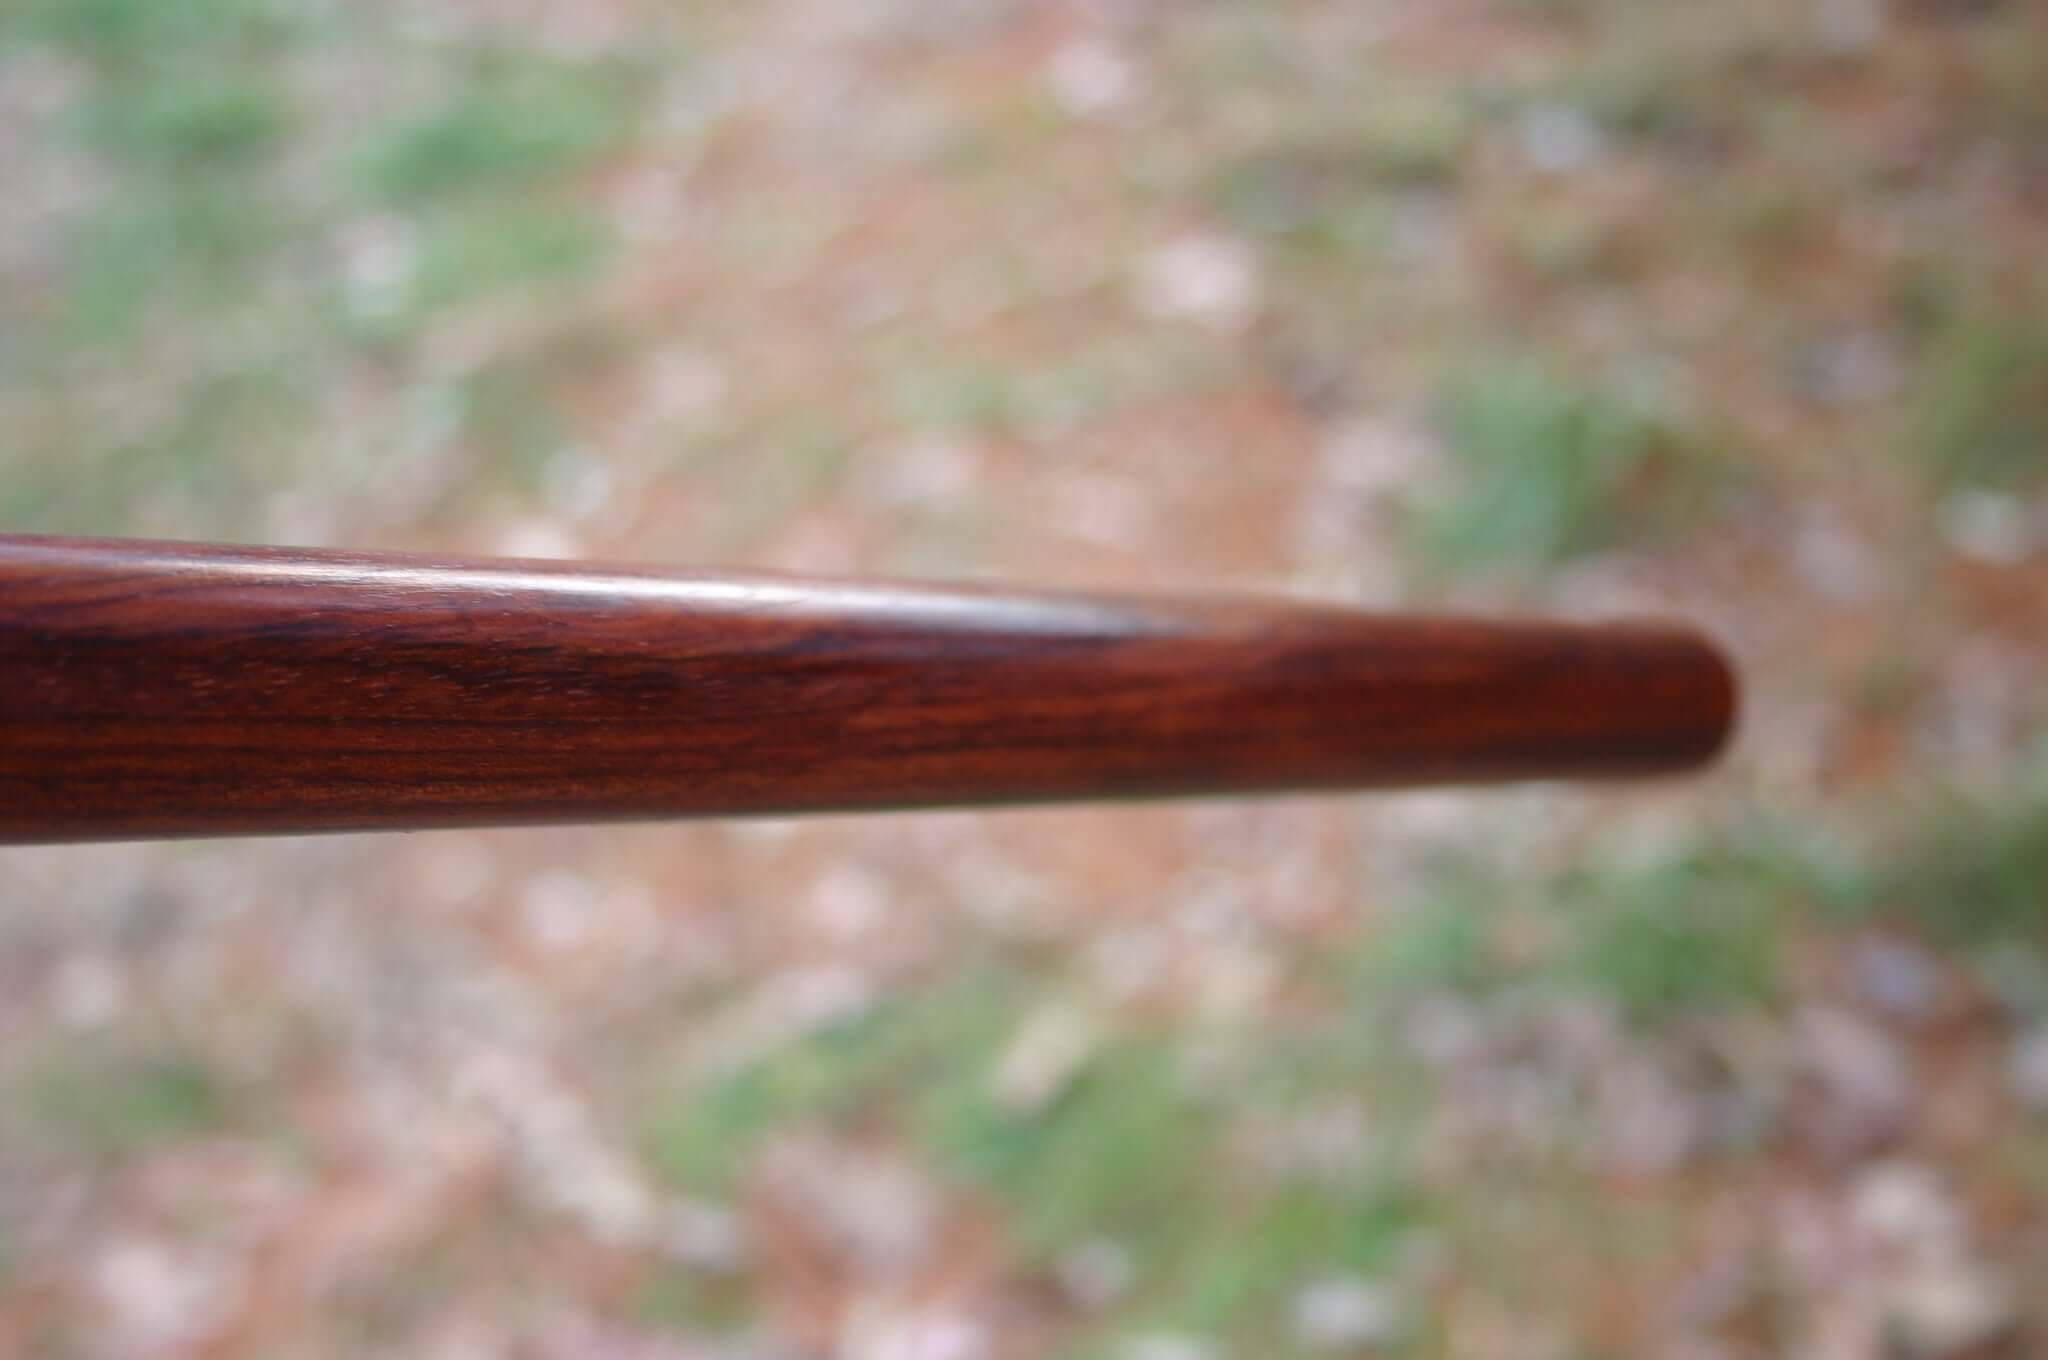 Bubinga kali sticks or escrima sticks made from red wood